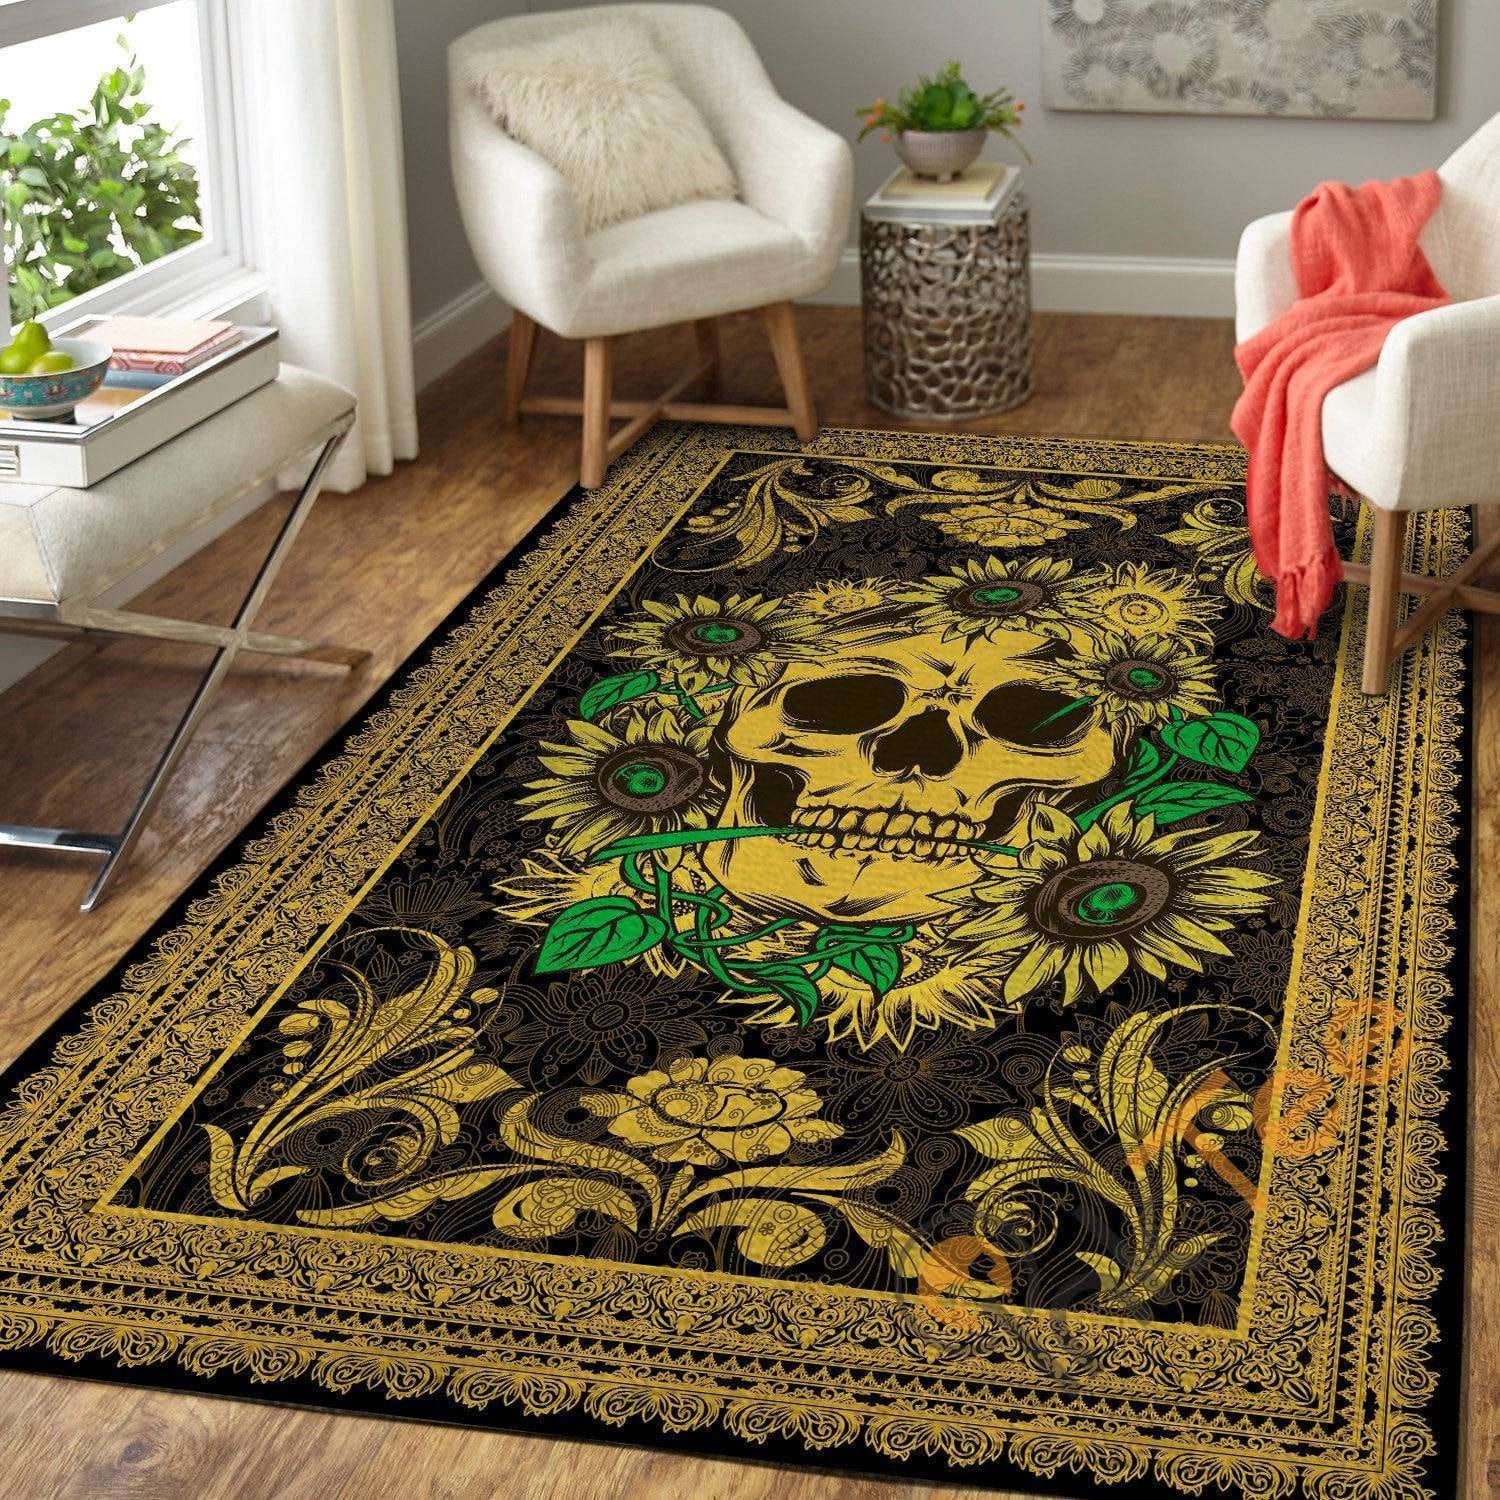 Golden Skull With Sunflowers Royal Pattern Hippie Floor Decor Soft Living Room Bedroom Carpet Highlight For Home Rug